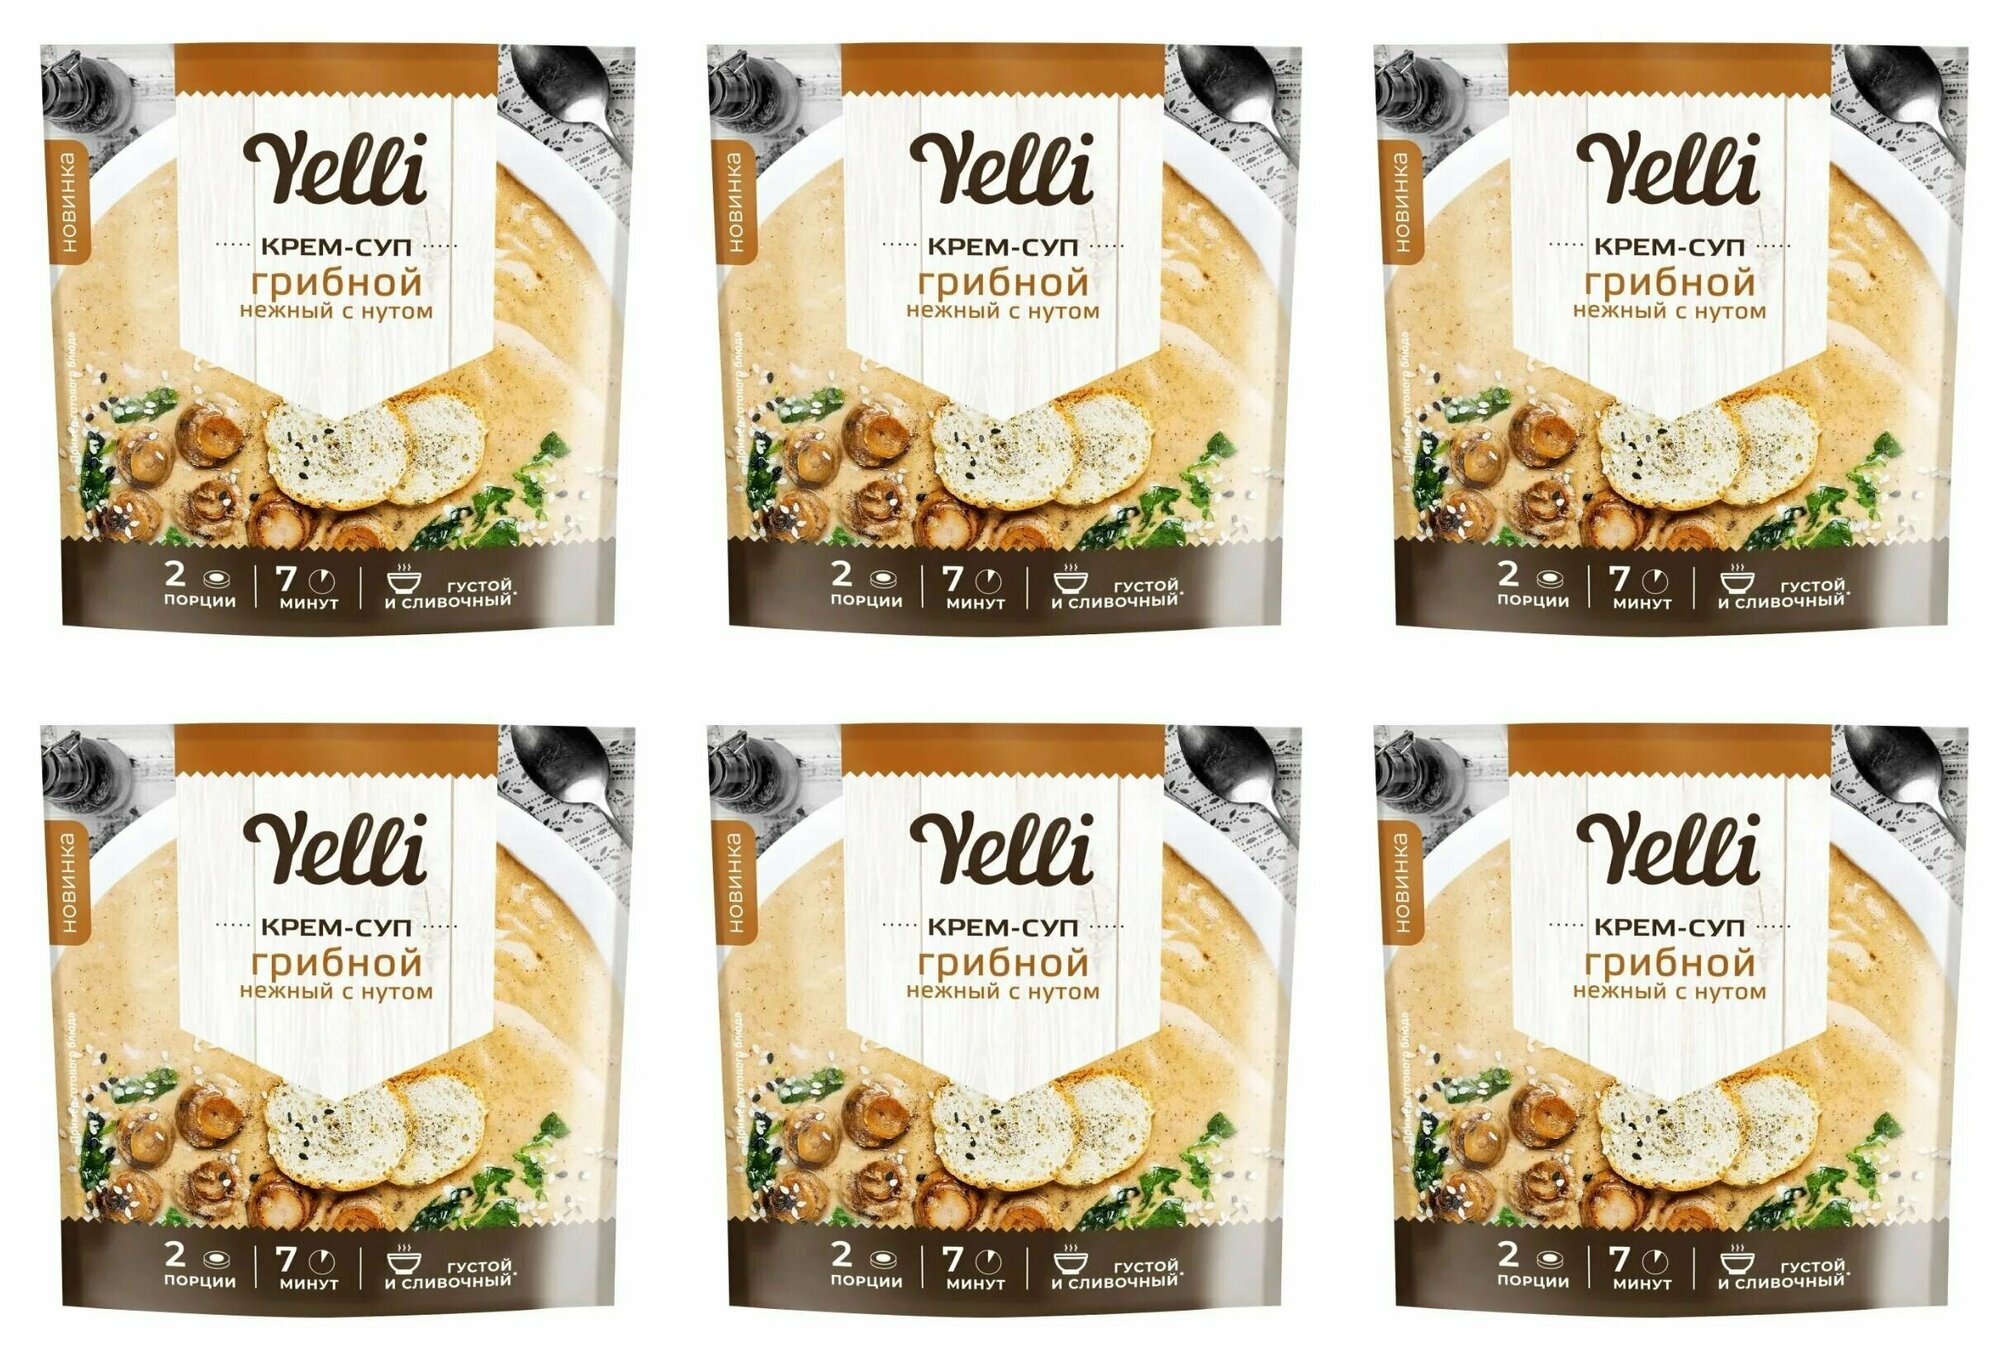 Yelli Крем-суп грибной нежный с нутом, 70 г, 6 уп - фотография № 1